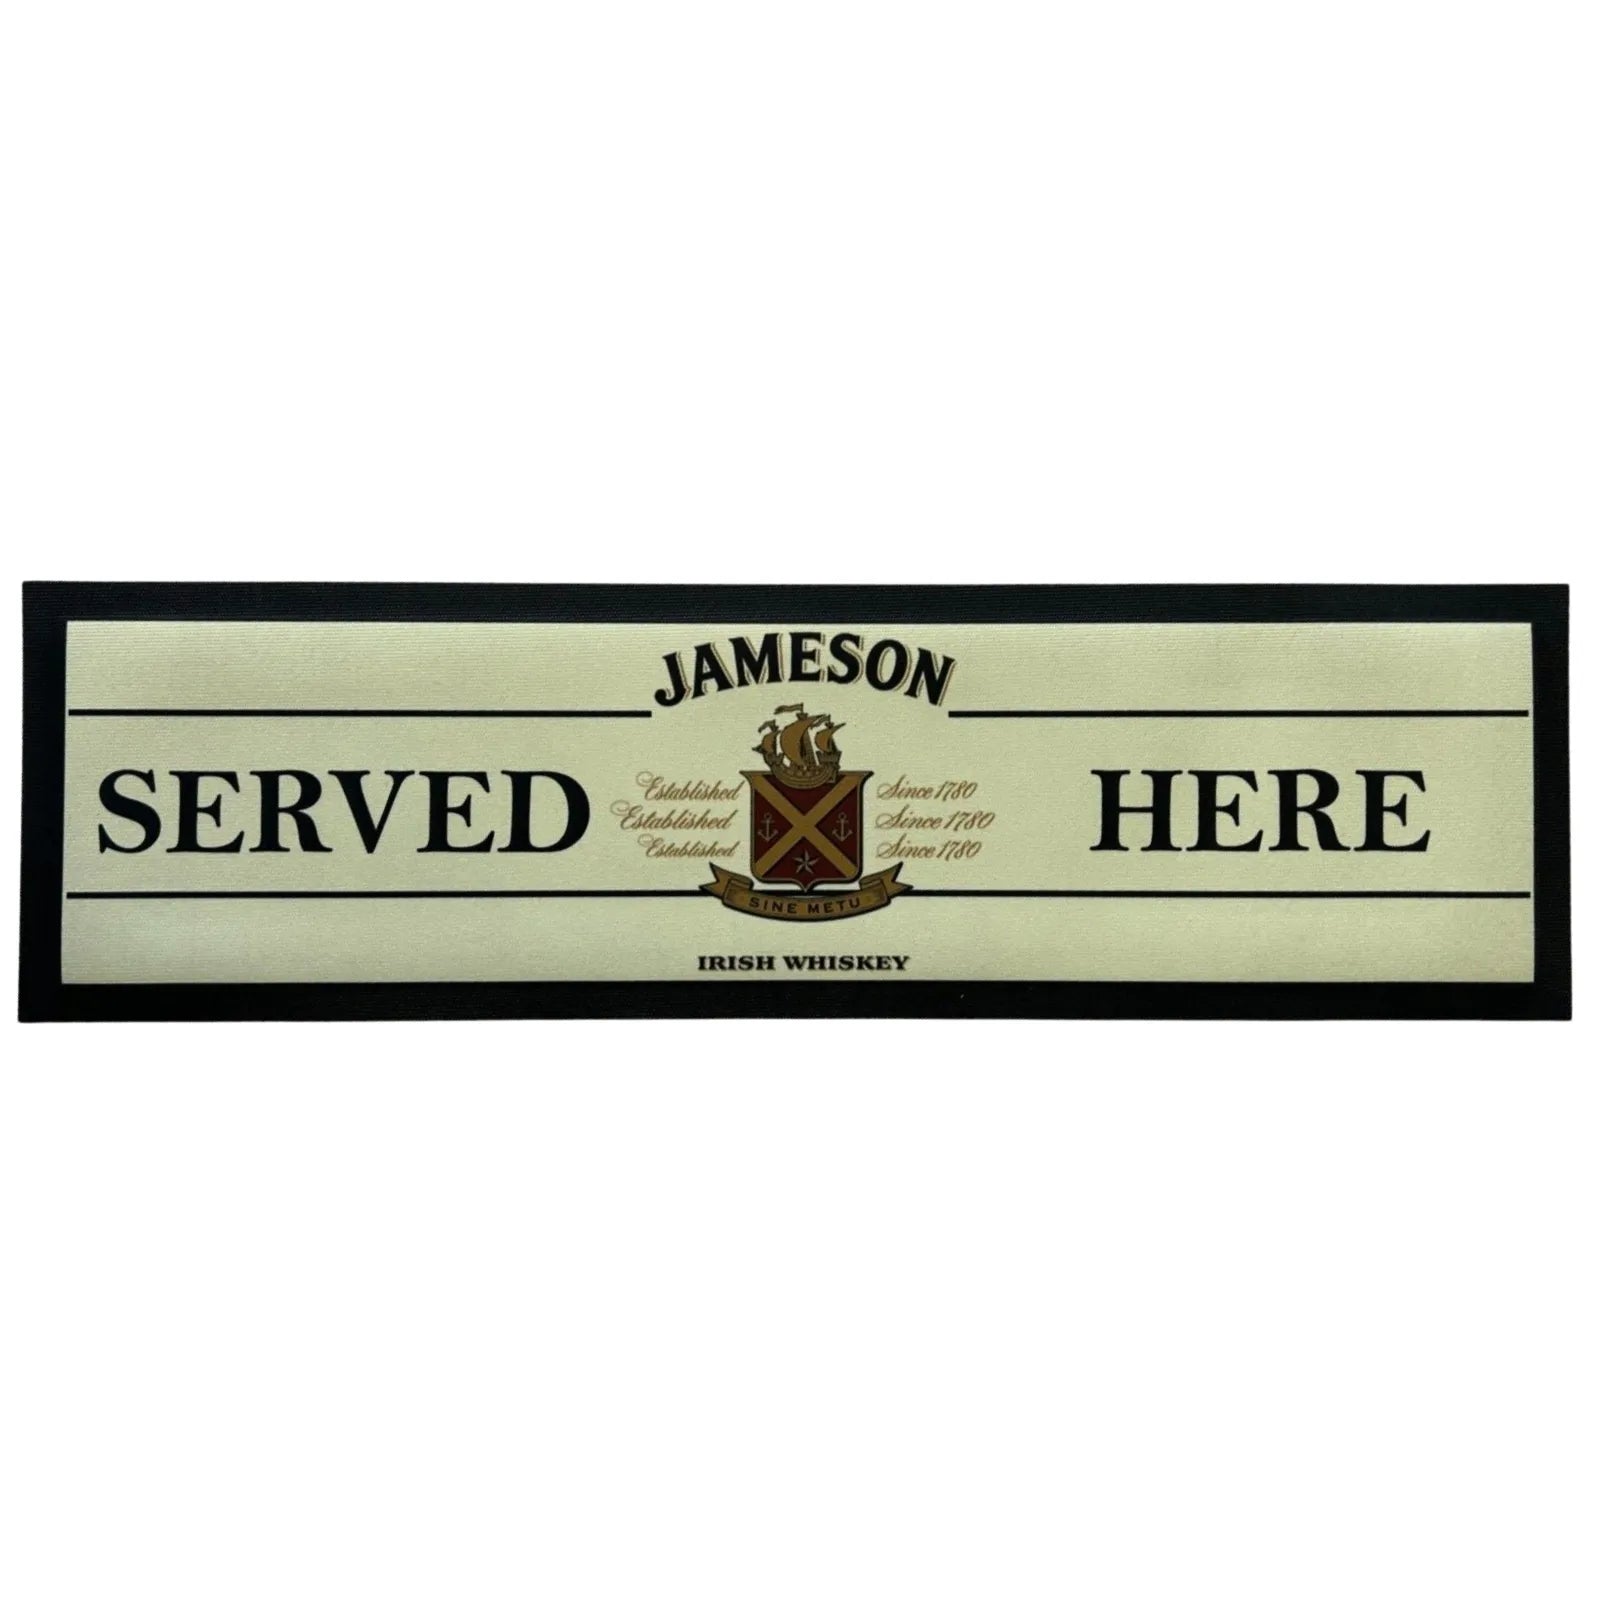 Jameson Served Here Premium Rubber-Backed Bar Mat Runner - KING CAVE